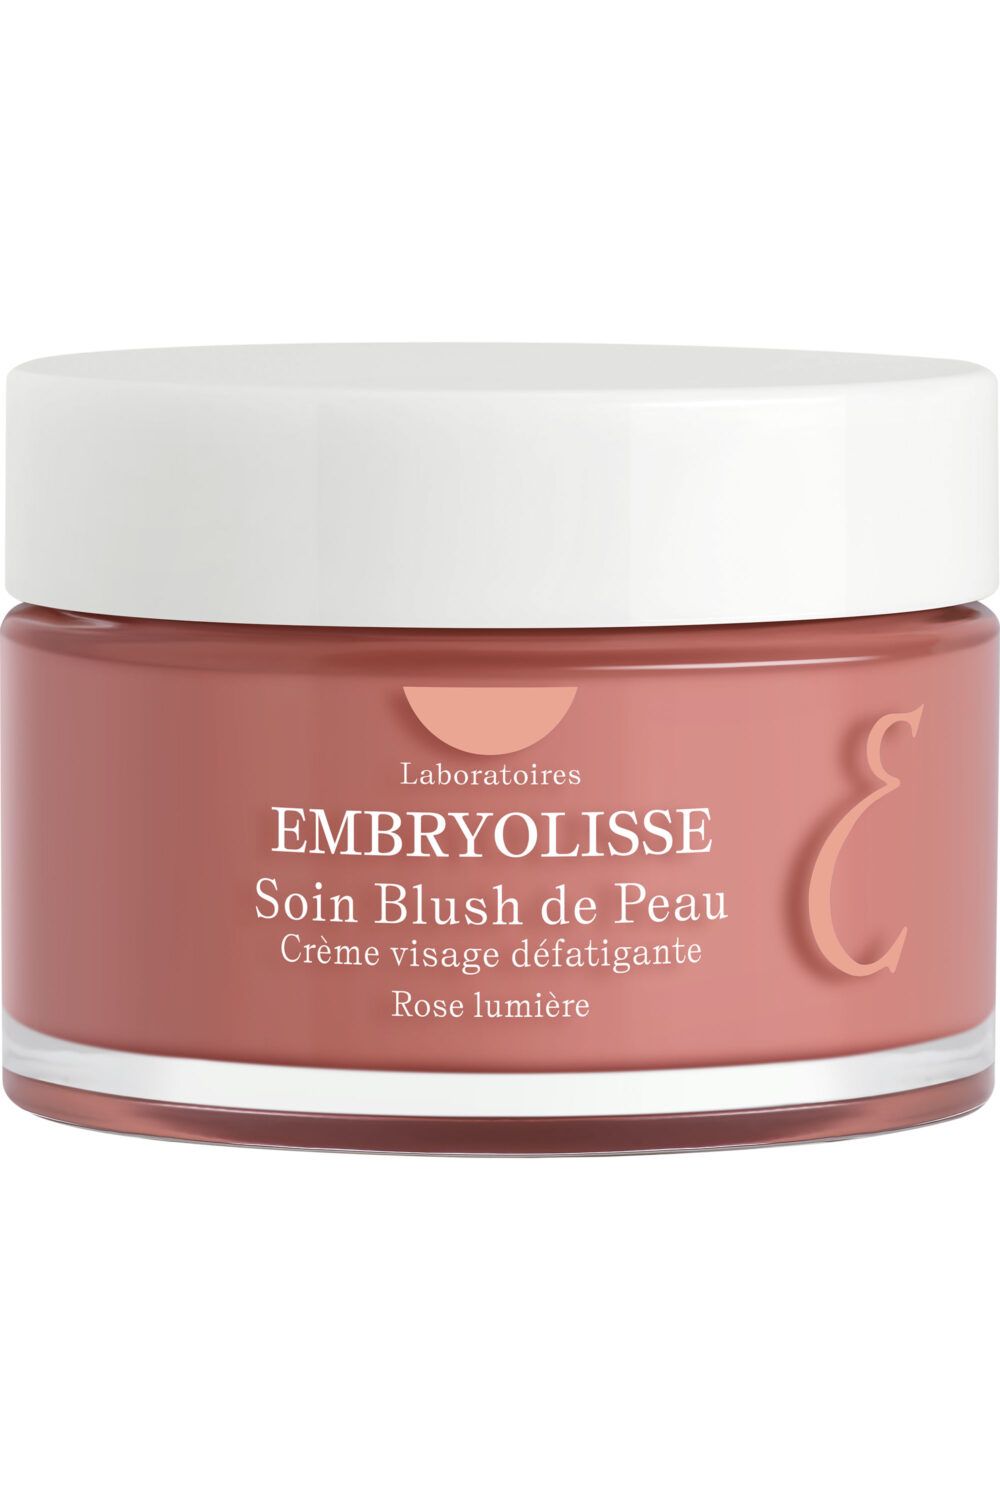 Embryolisse - Soin blush de peau 50ml